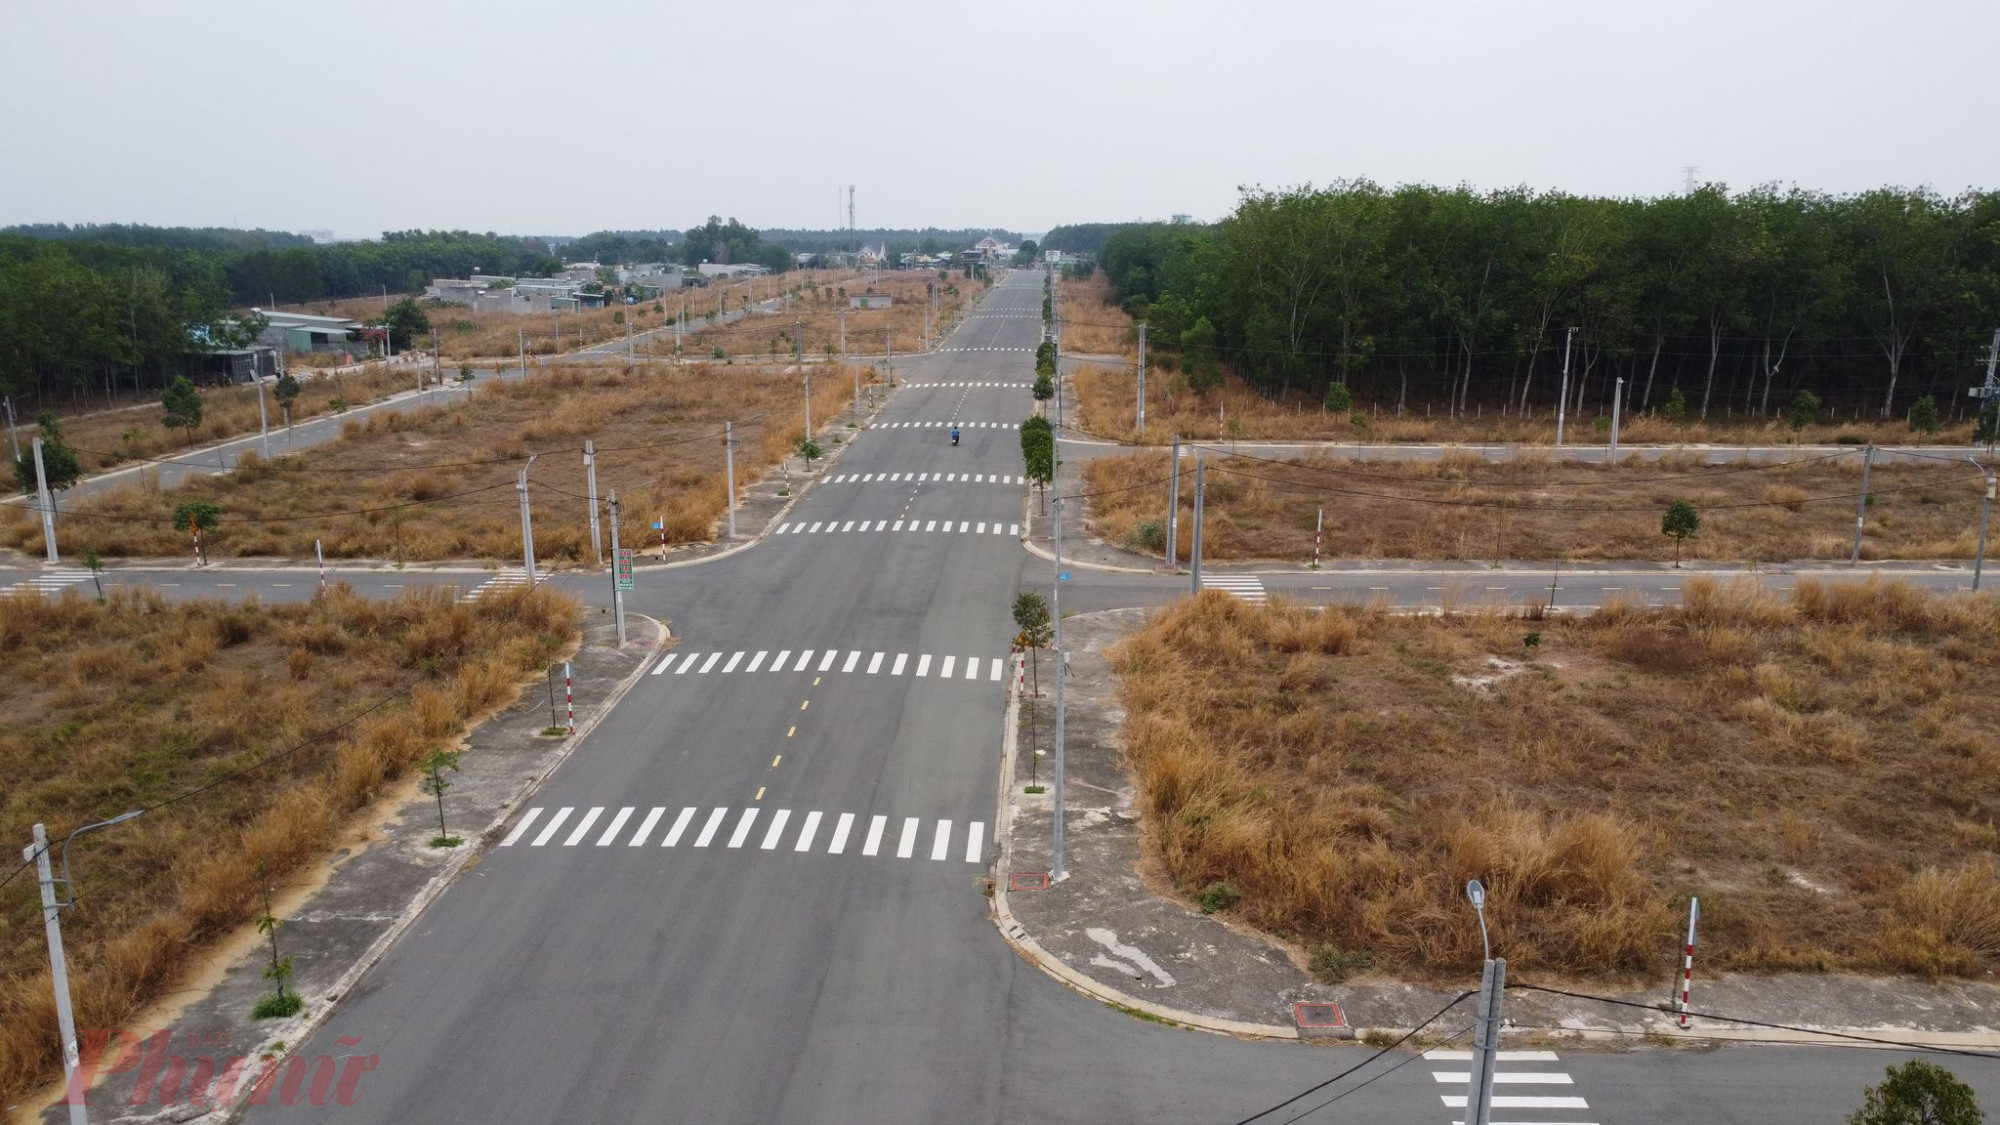 Vào thời điểm năm 2019, dự án Tuấn Điền Phát 3 (tên thương mại là Dragon City) tọa lạc tại đường ĐT 749C, thuộc thị trấn Lai Uyên, huyện Bàu Bàng, tỉnh Bình Dương được quảng cáo rầm rộ ra thị trường với diện tích 12ha, bao gồm 600 lô nền, giờ đây chỉ là khu đất cỏ mọc cháy. 